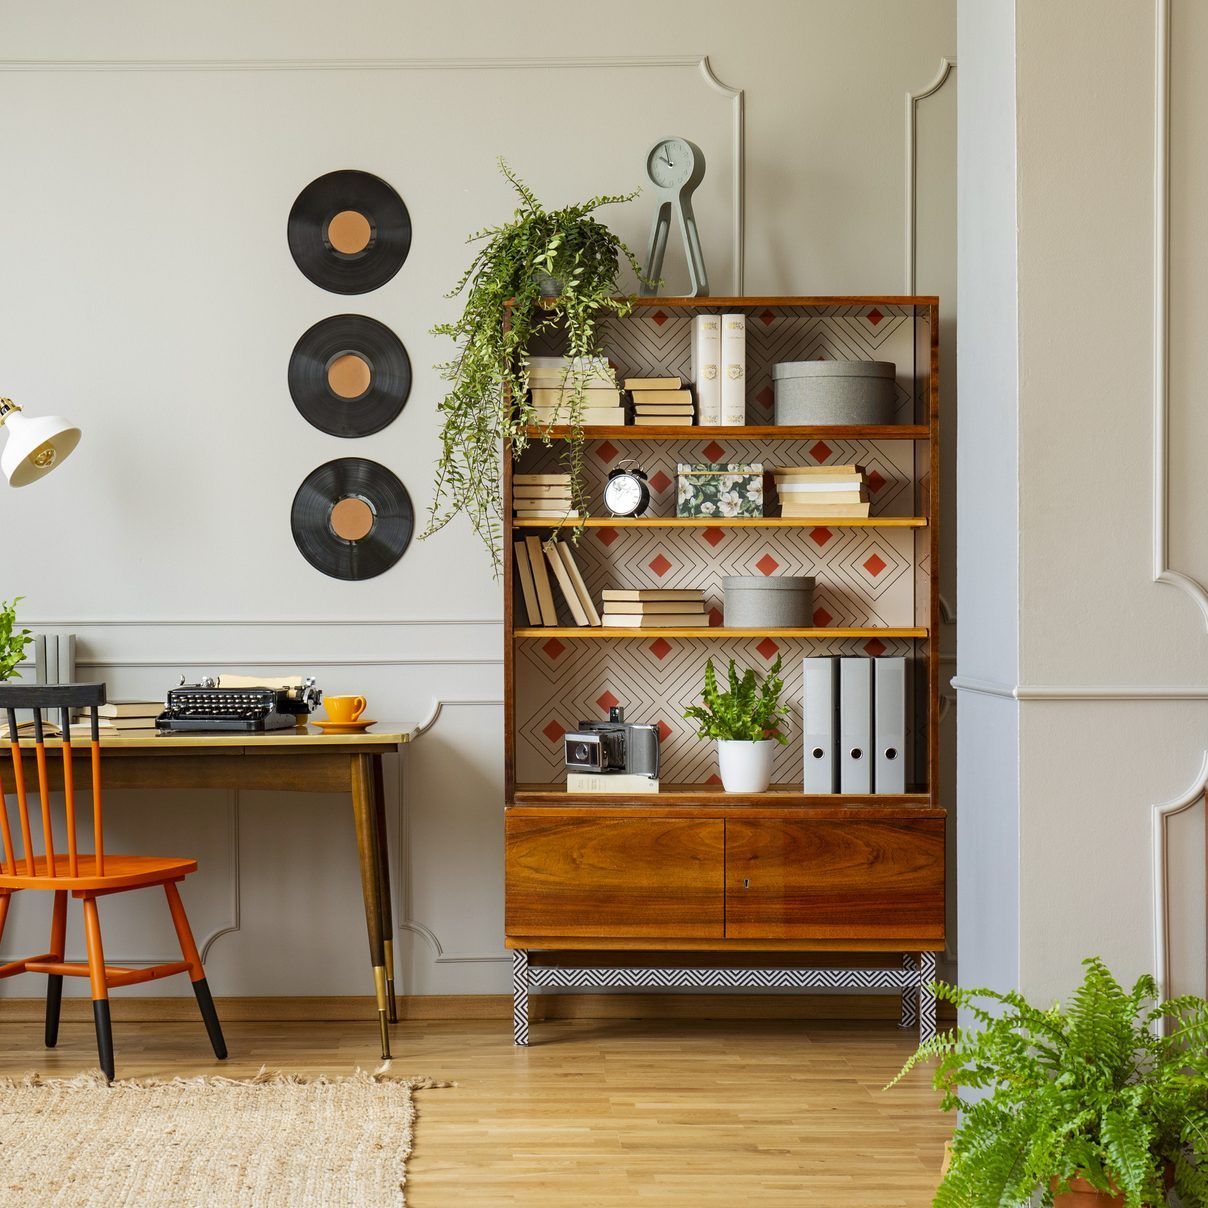 Виниловые пластинки украшают серую стену с лепниной и деревянной мебелью в ретро-интерьере домашнего офиса для писателя.  Настоящее фото.